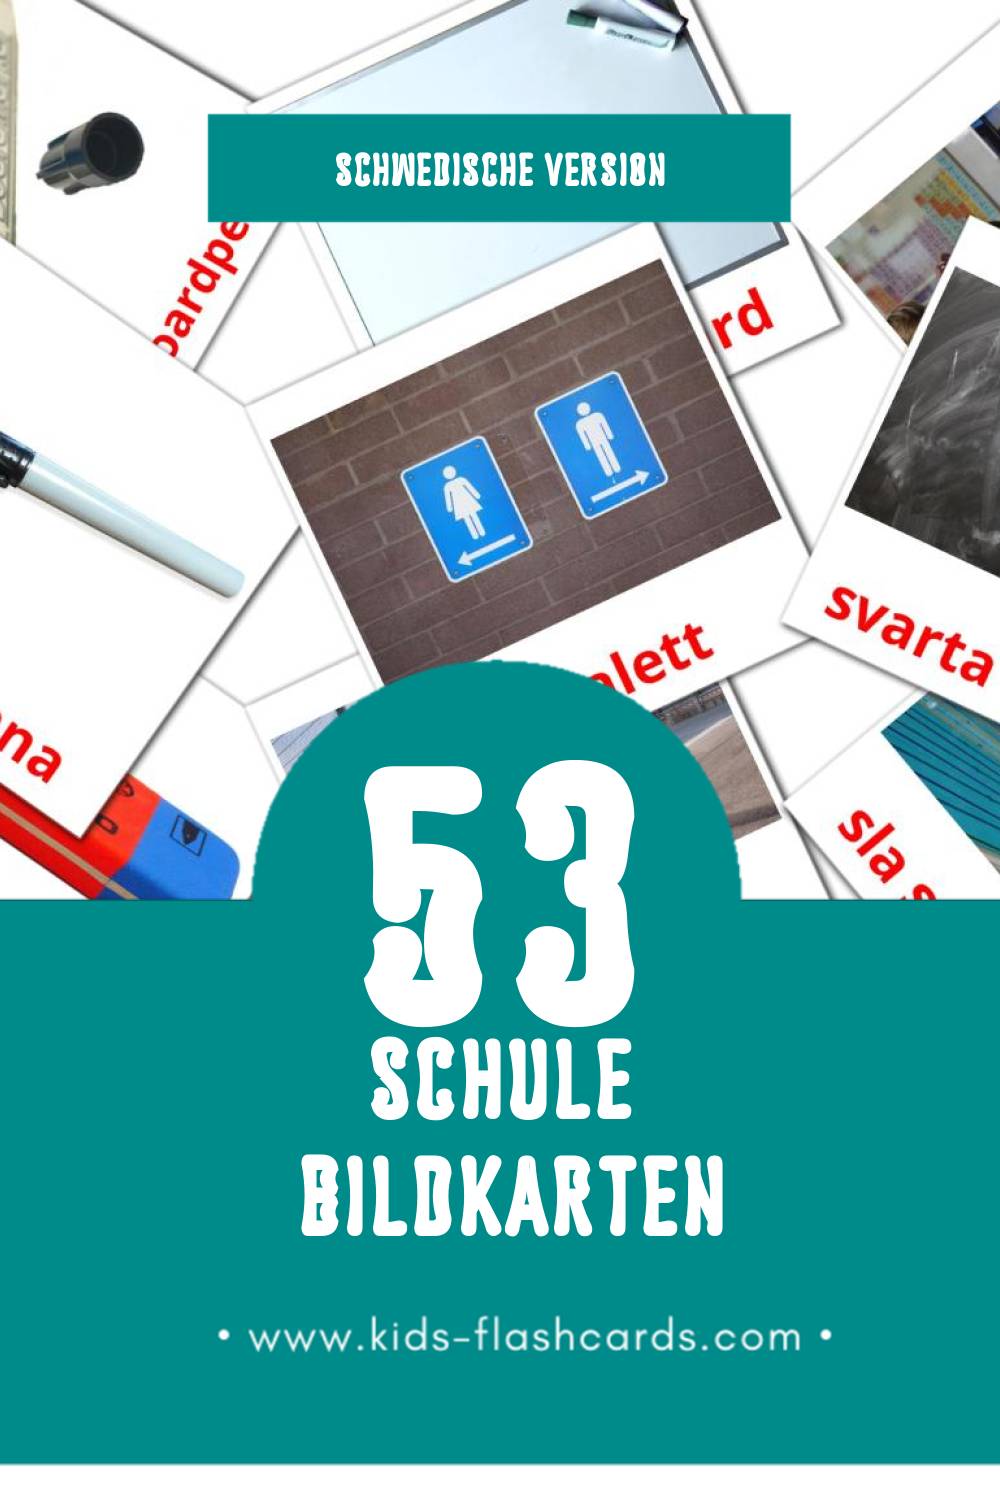 Visual Skola Flashcards für Kleinkinder (53 Karten in Schwedisch)